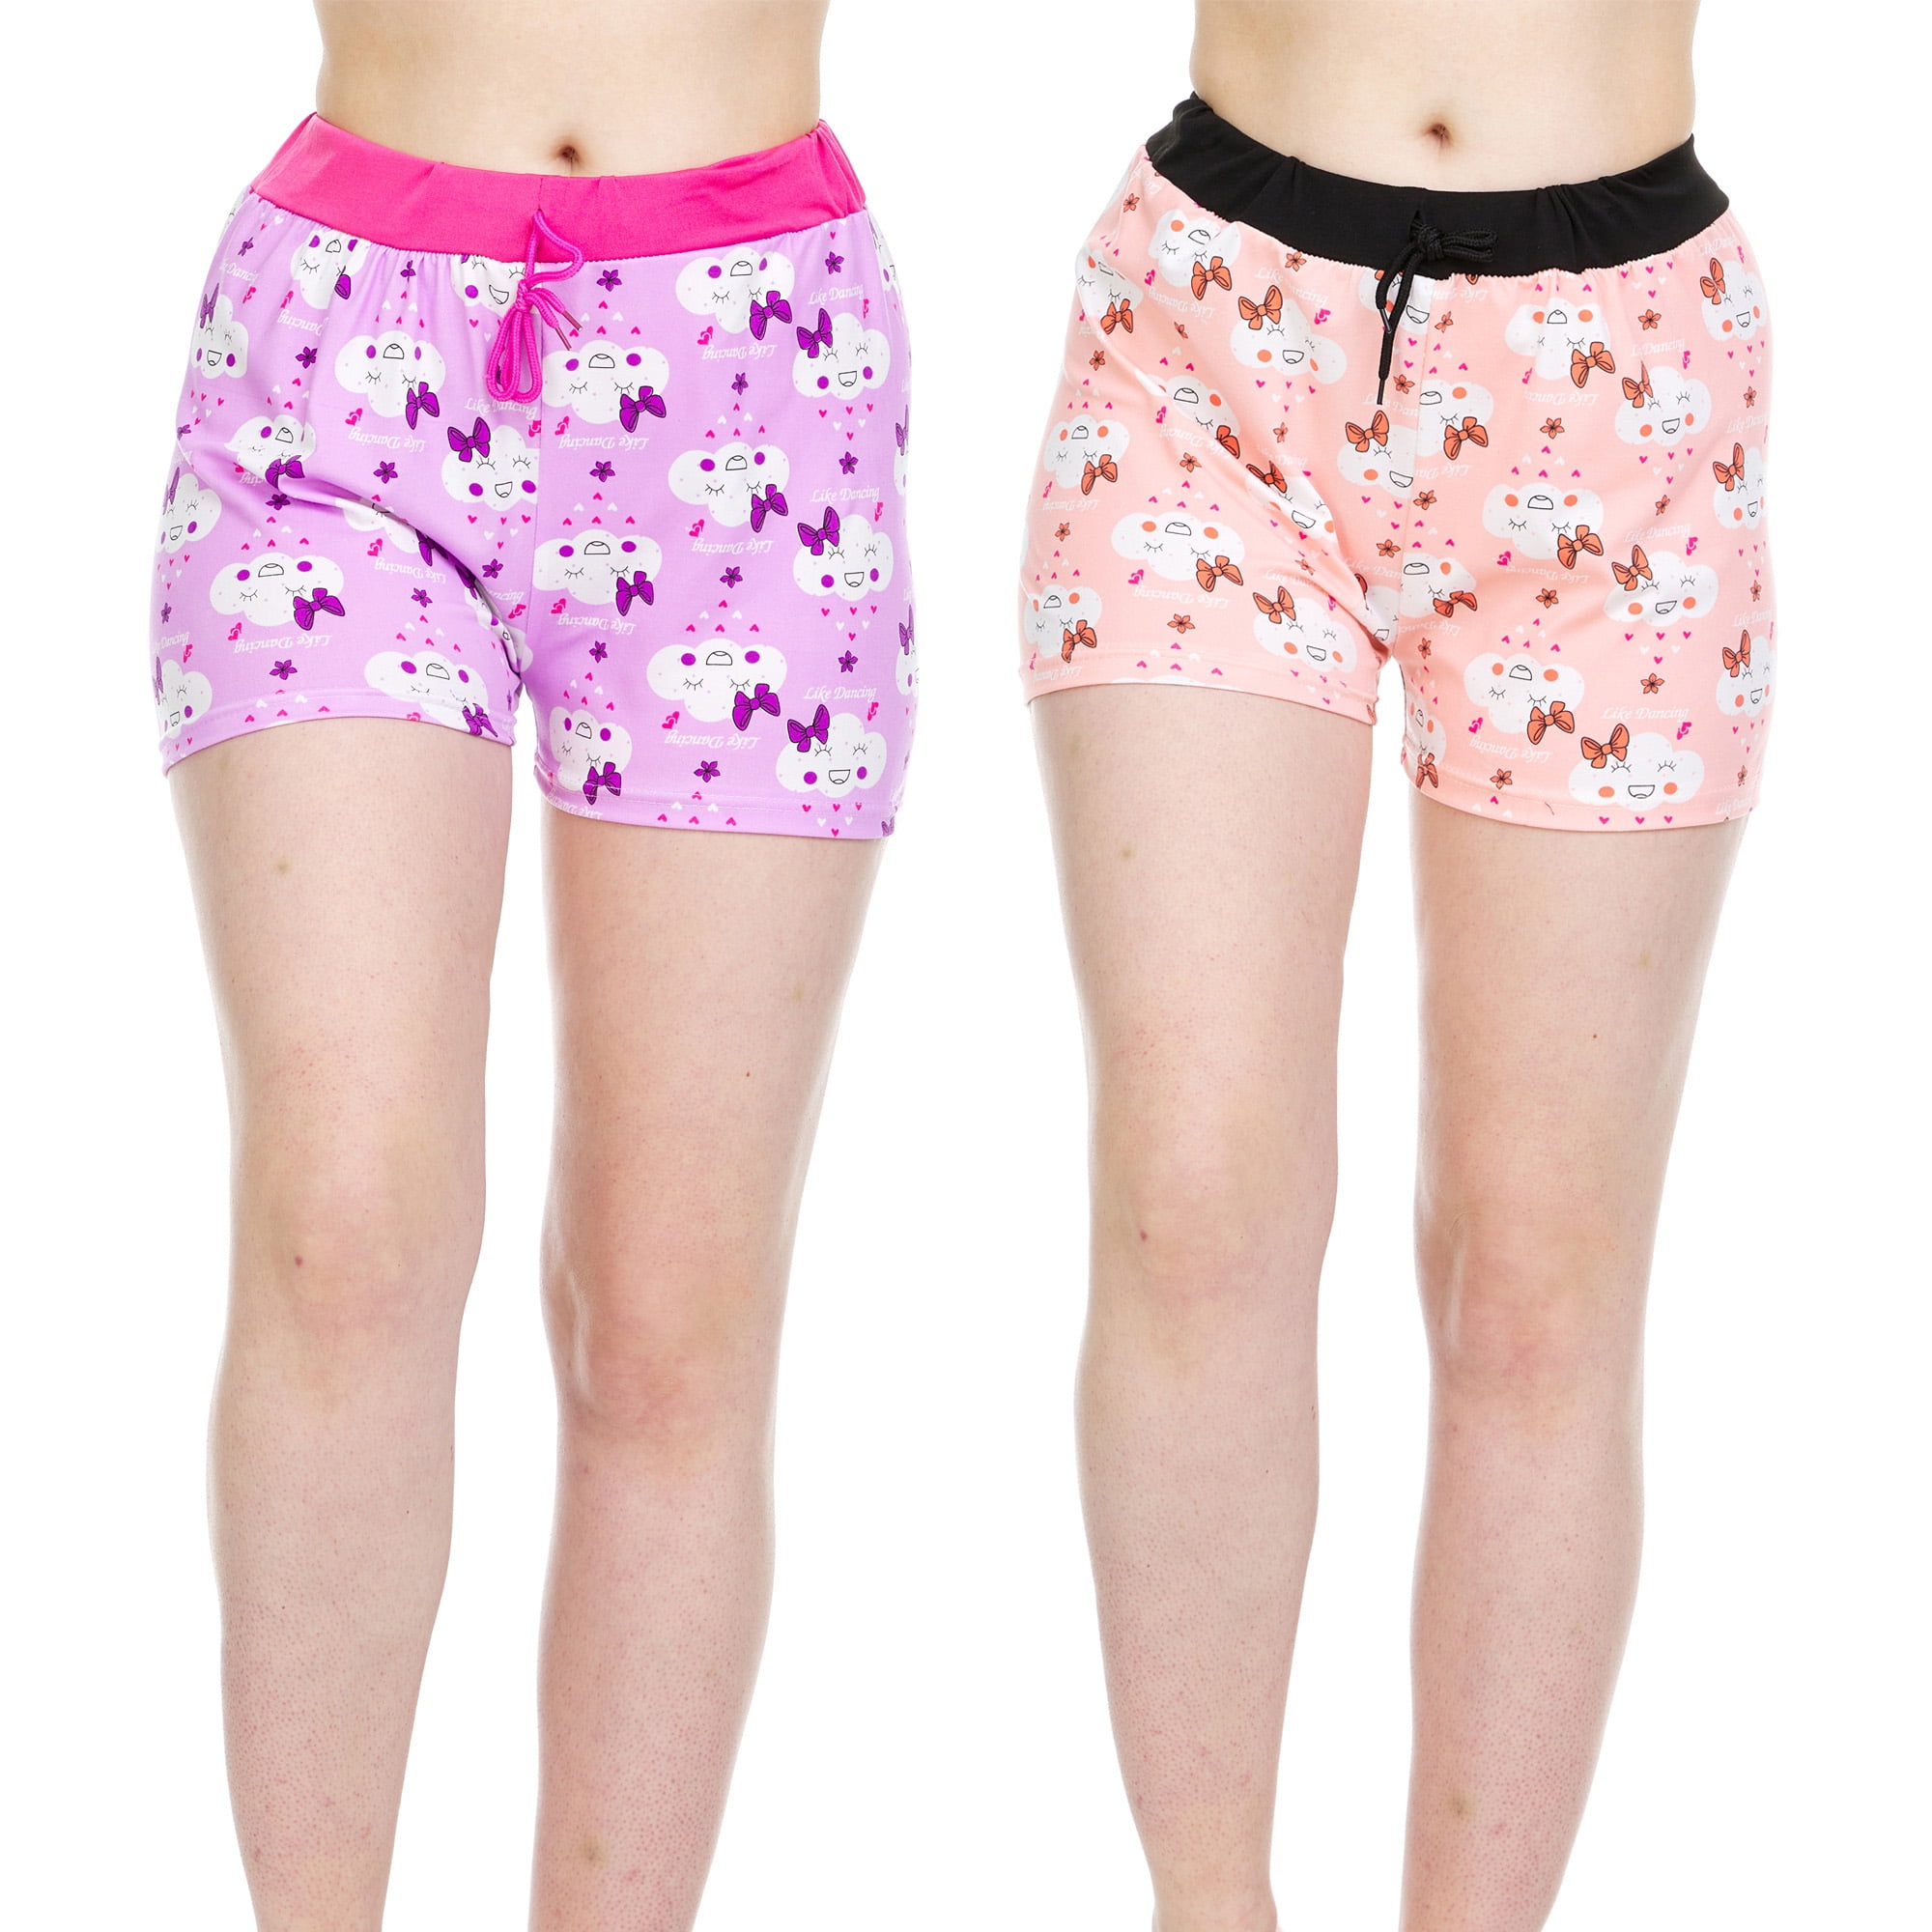 EZI Womens Pajama Sleep Lounge Drawstring Shorts 2-Pack 